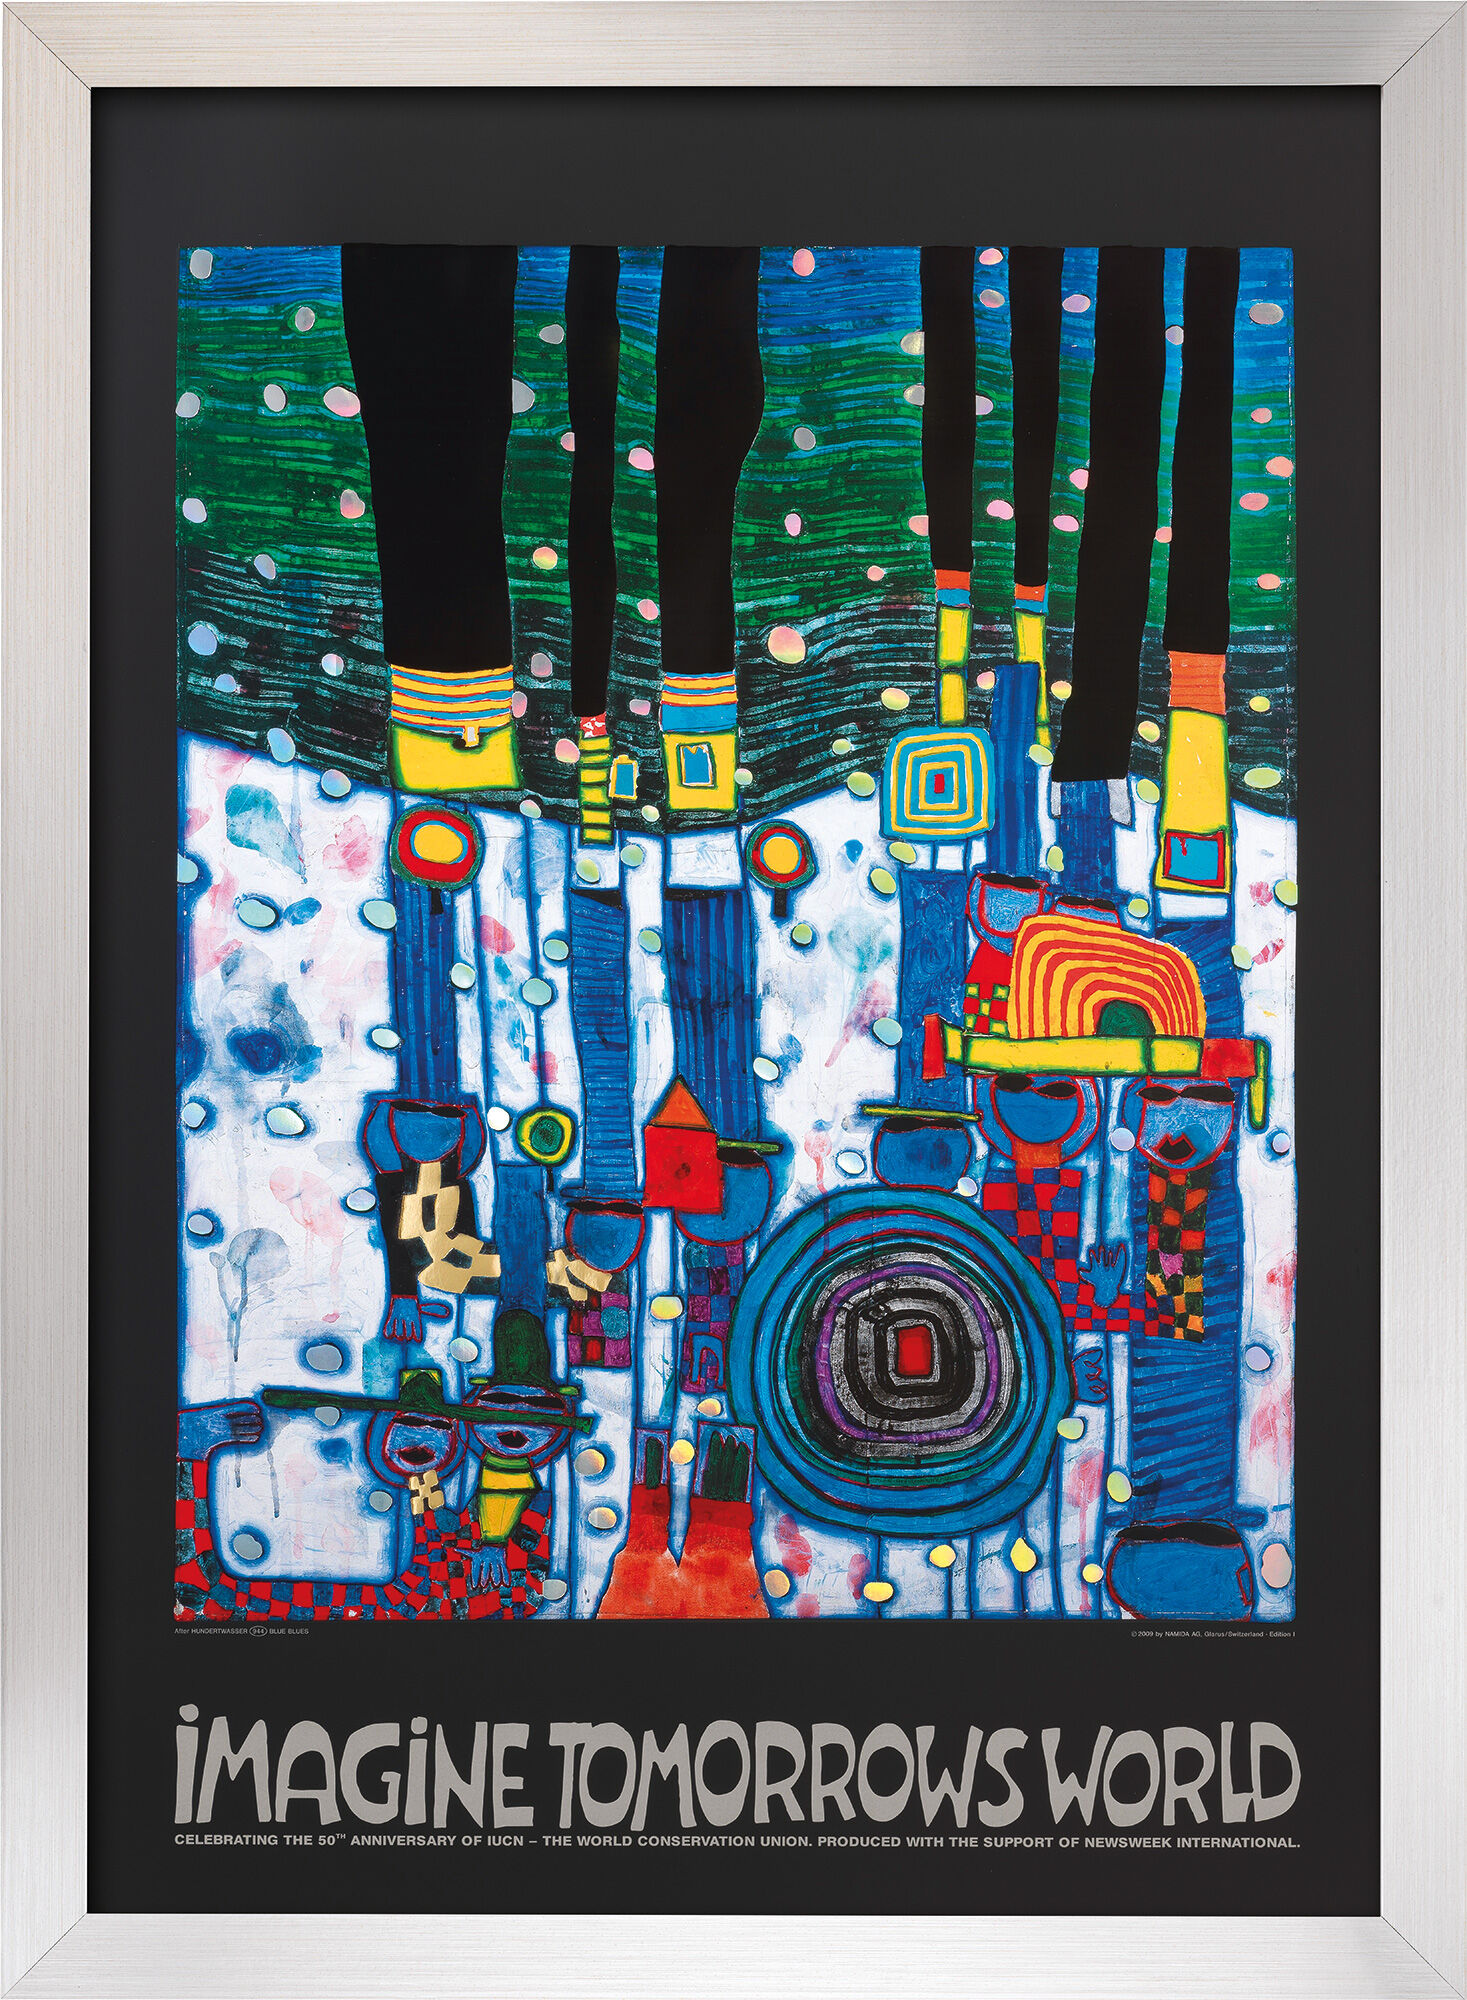 Tableau "Imaginez le monde de demain" (version bleue), encadré von Friedensreich Hundertwasser